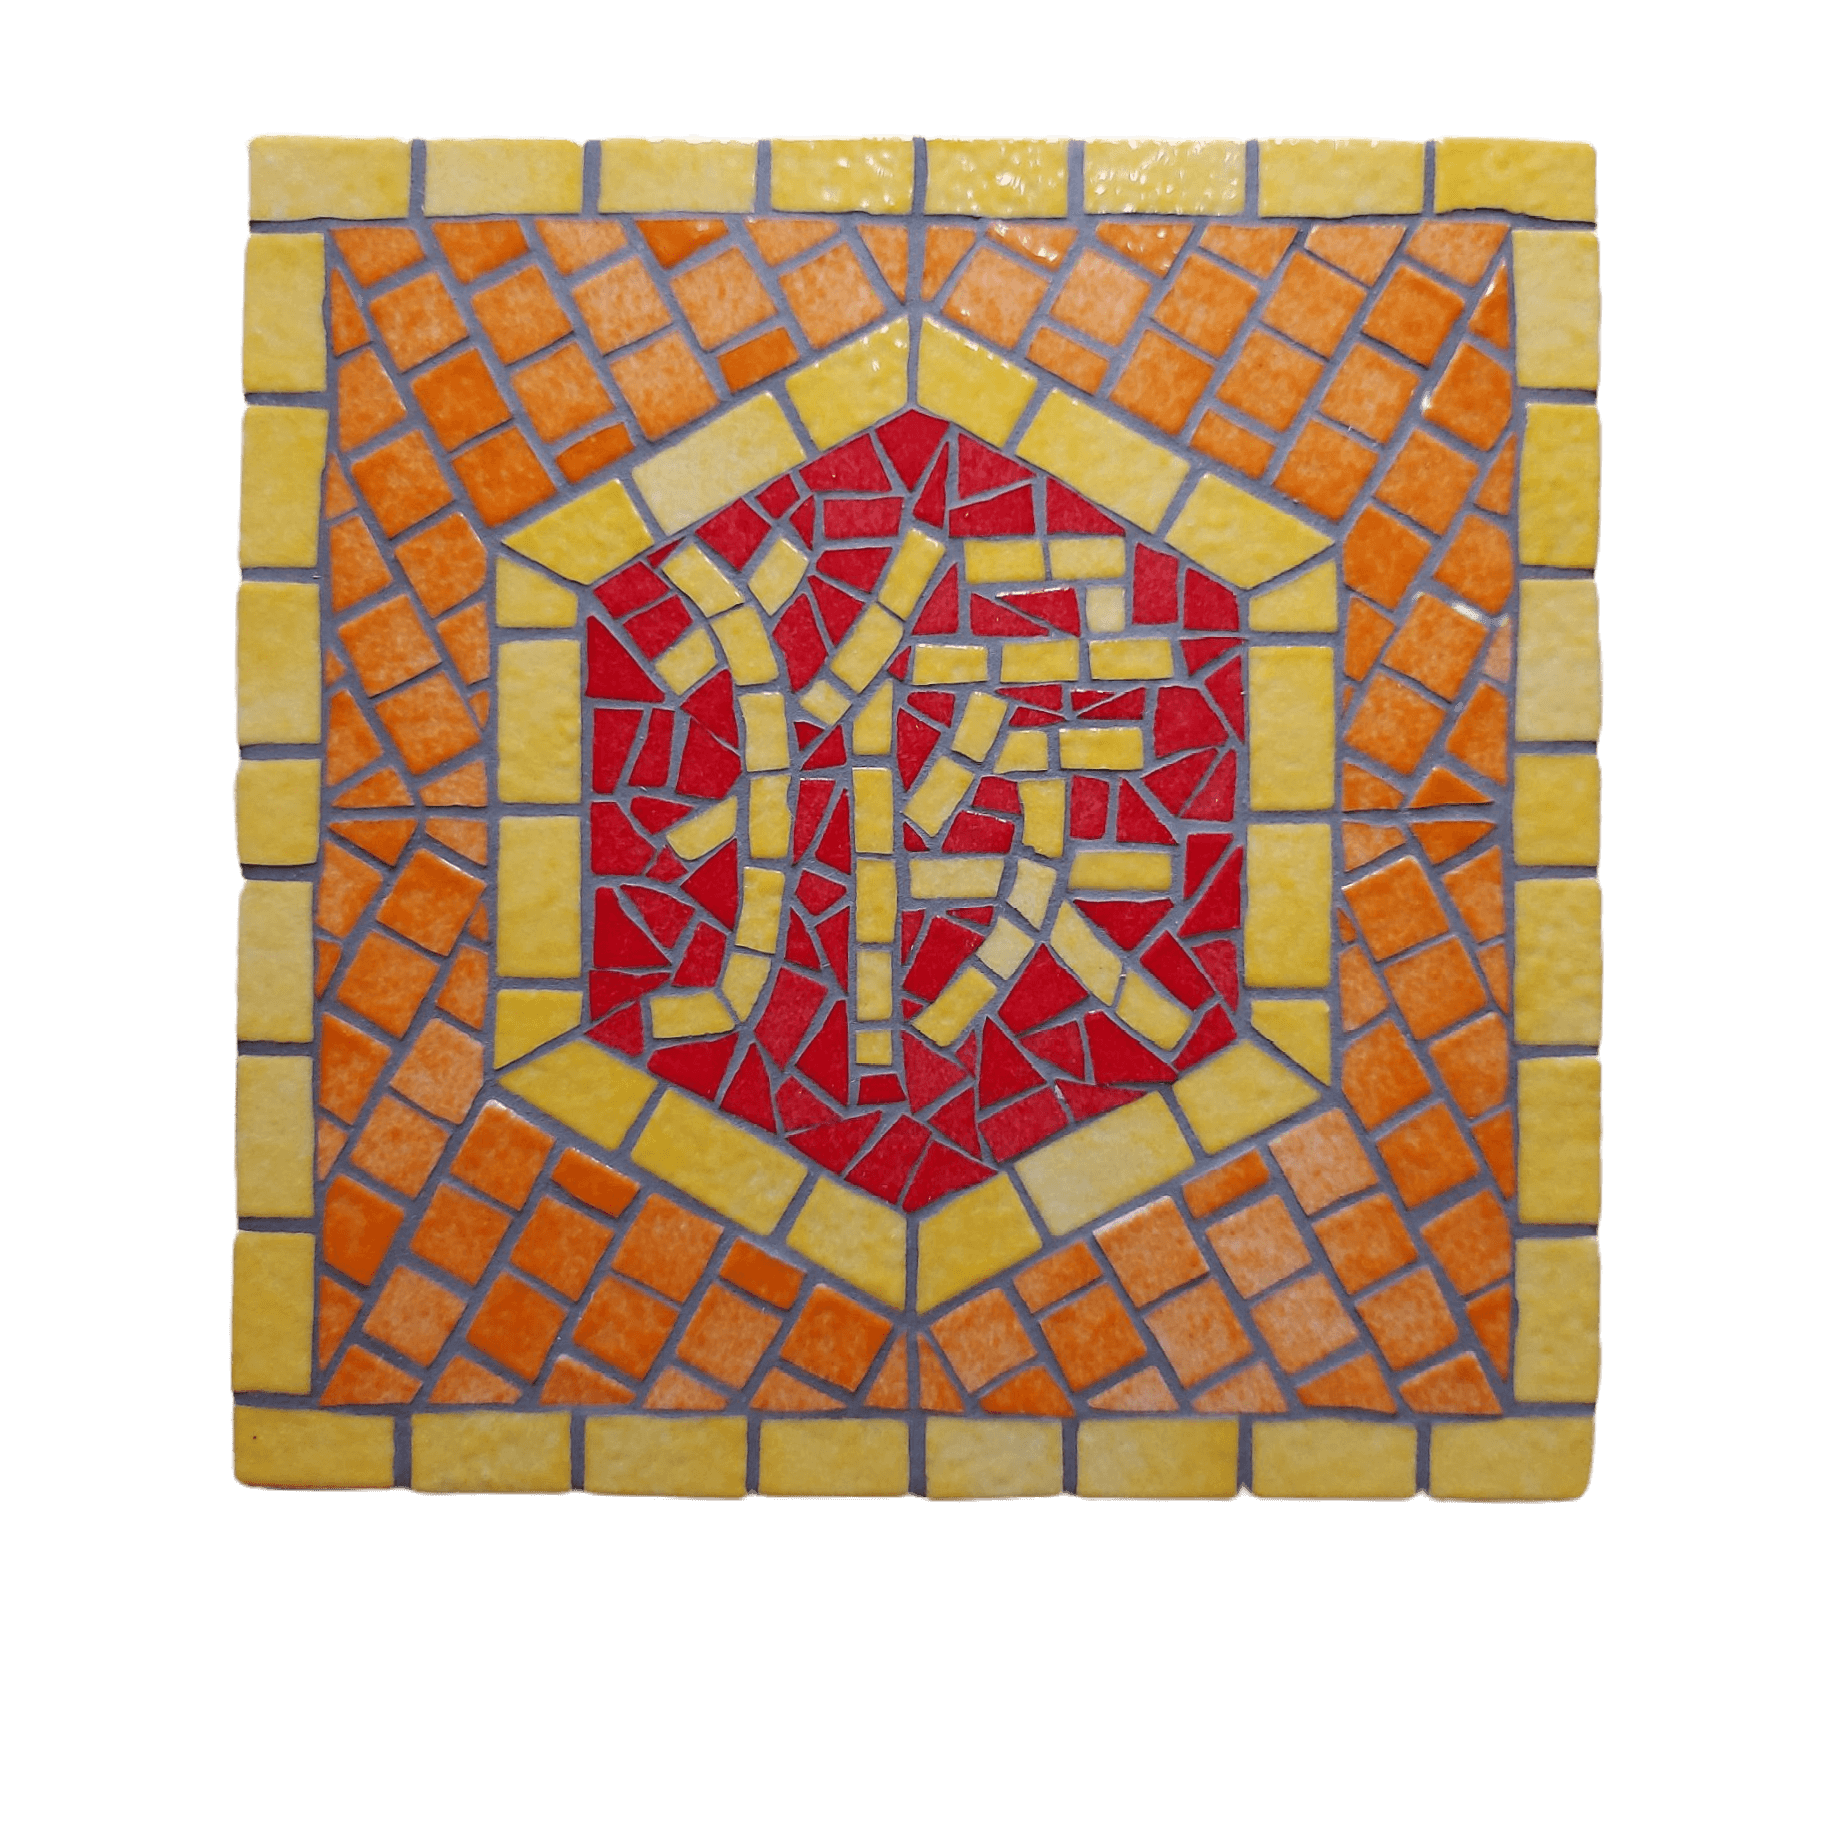 Artisanal Chinese zodiac mosaic, Monkey sign, yellow line